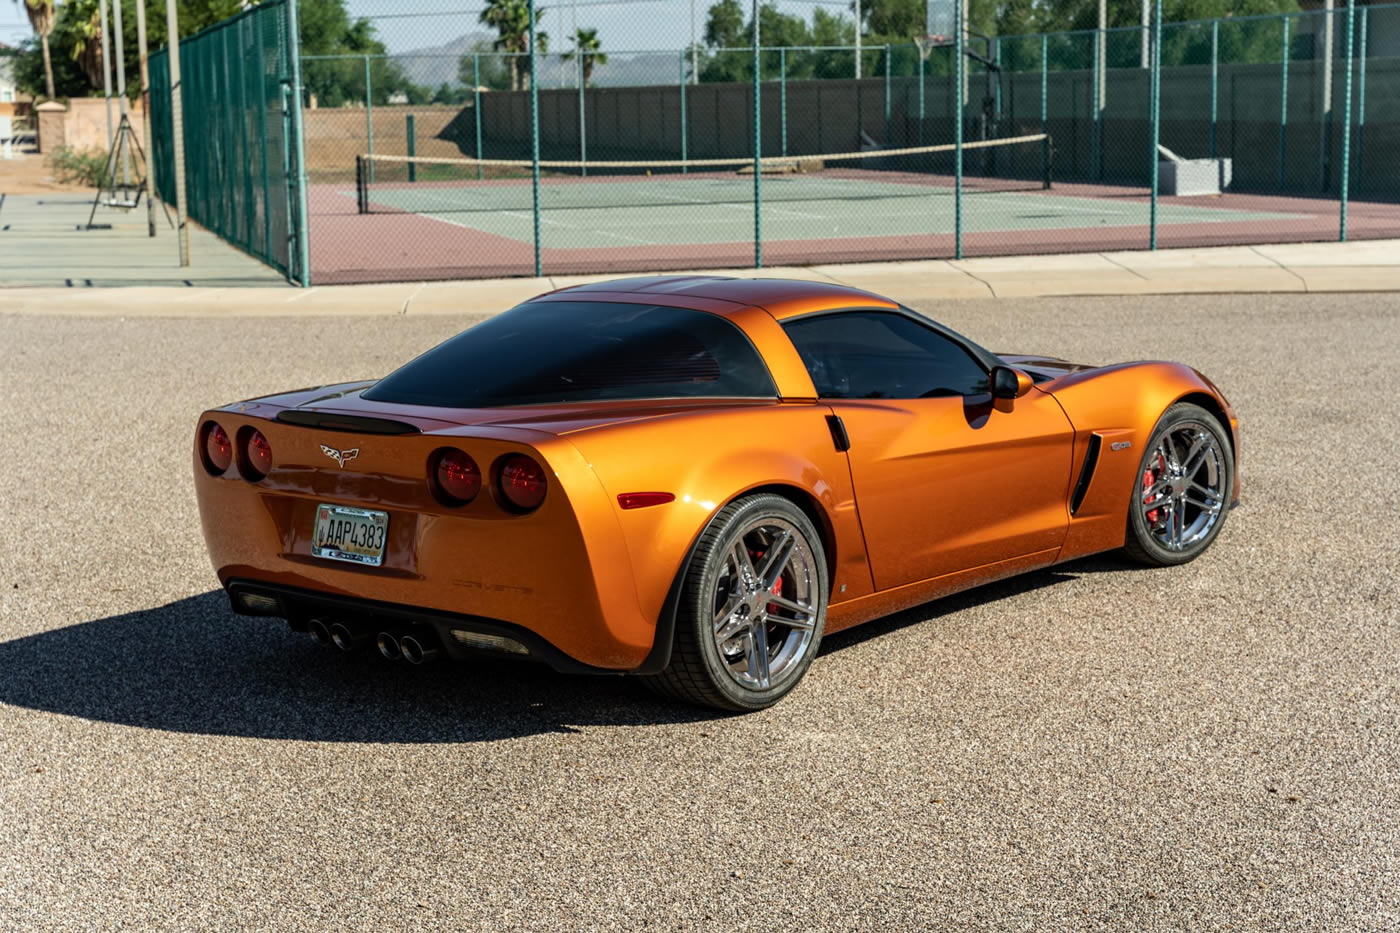 2008 Corvette Z06 in Atomic Orange